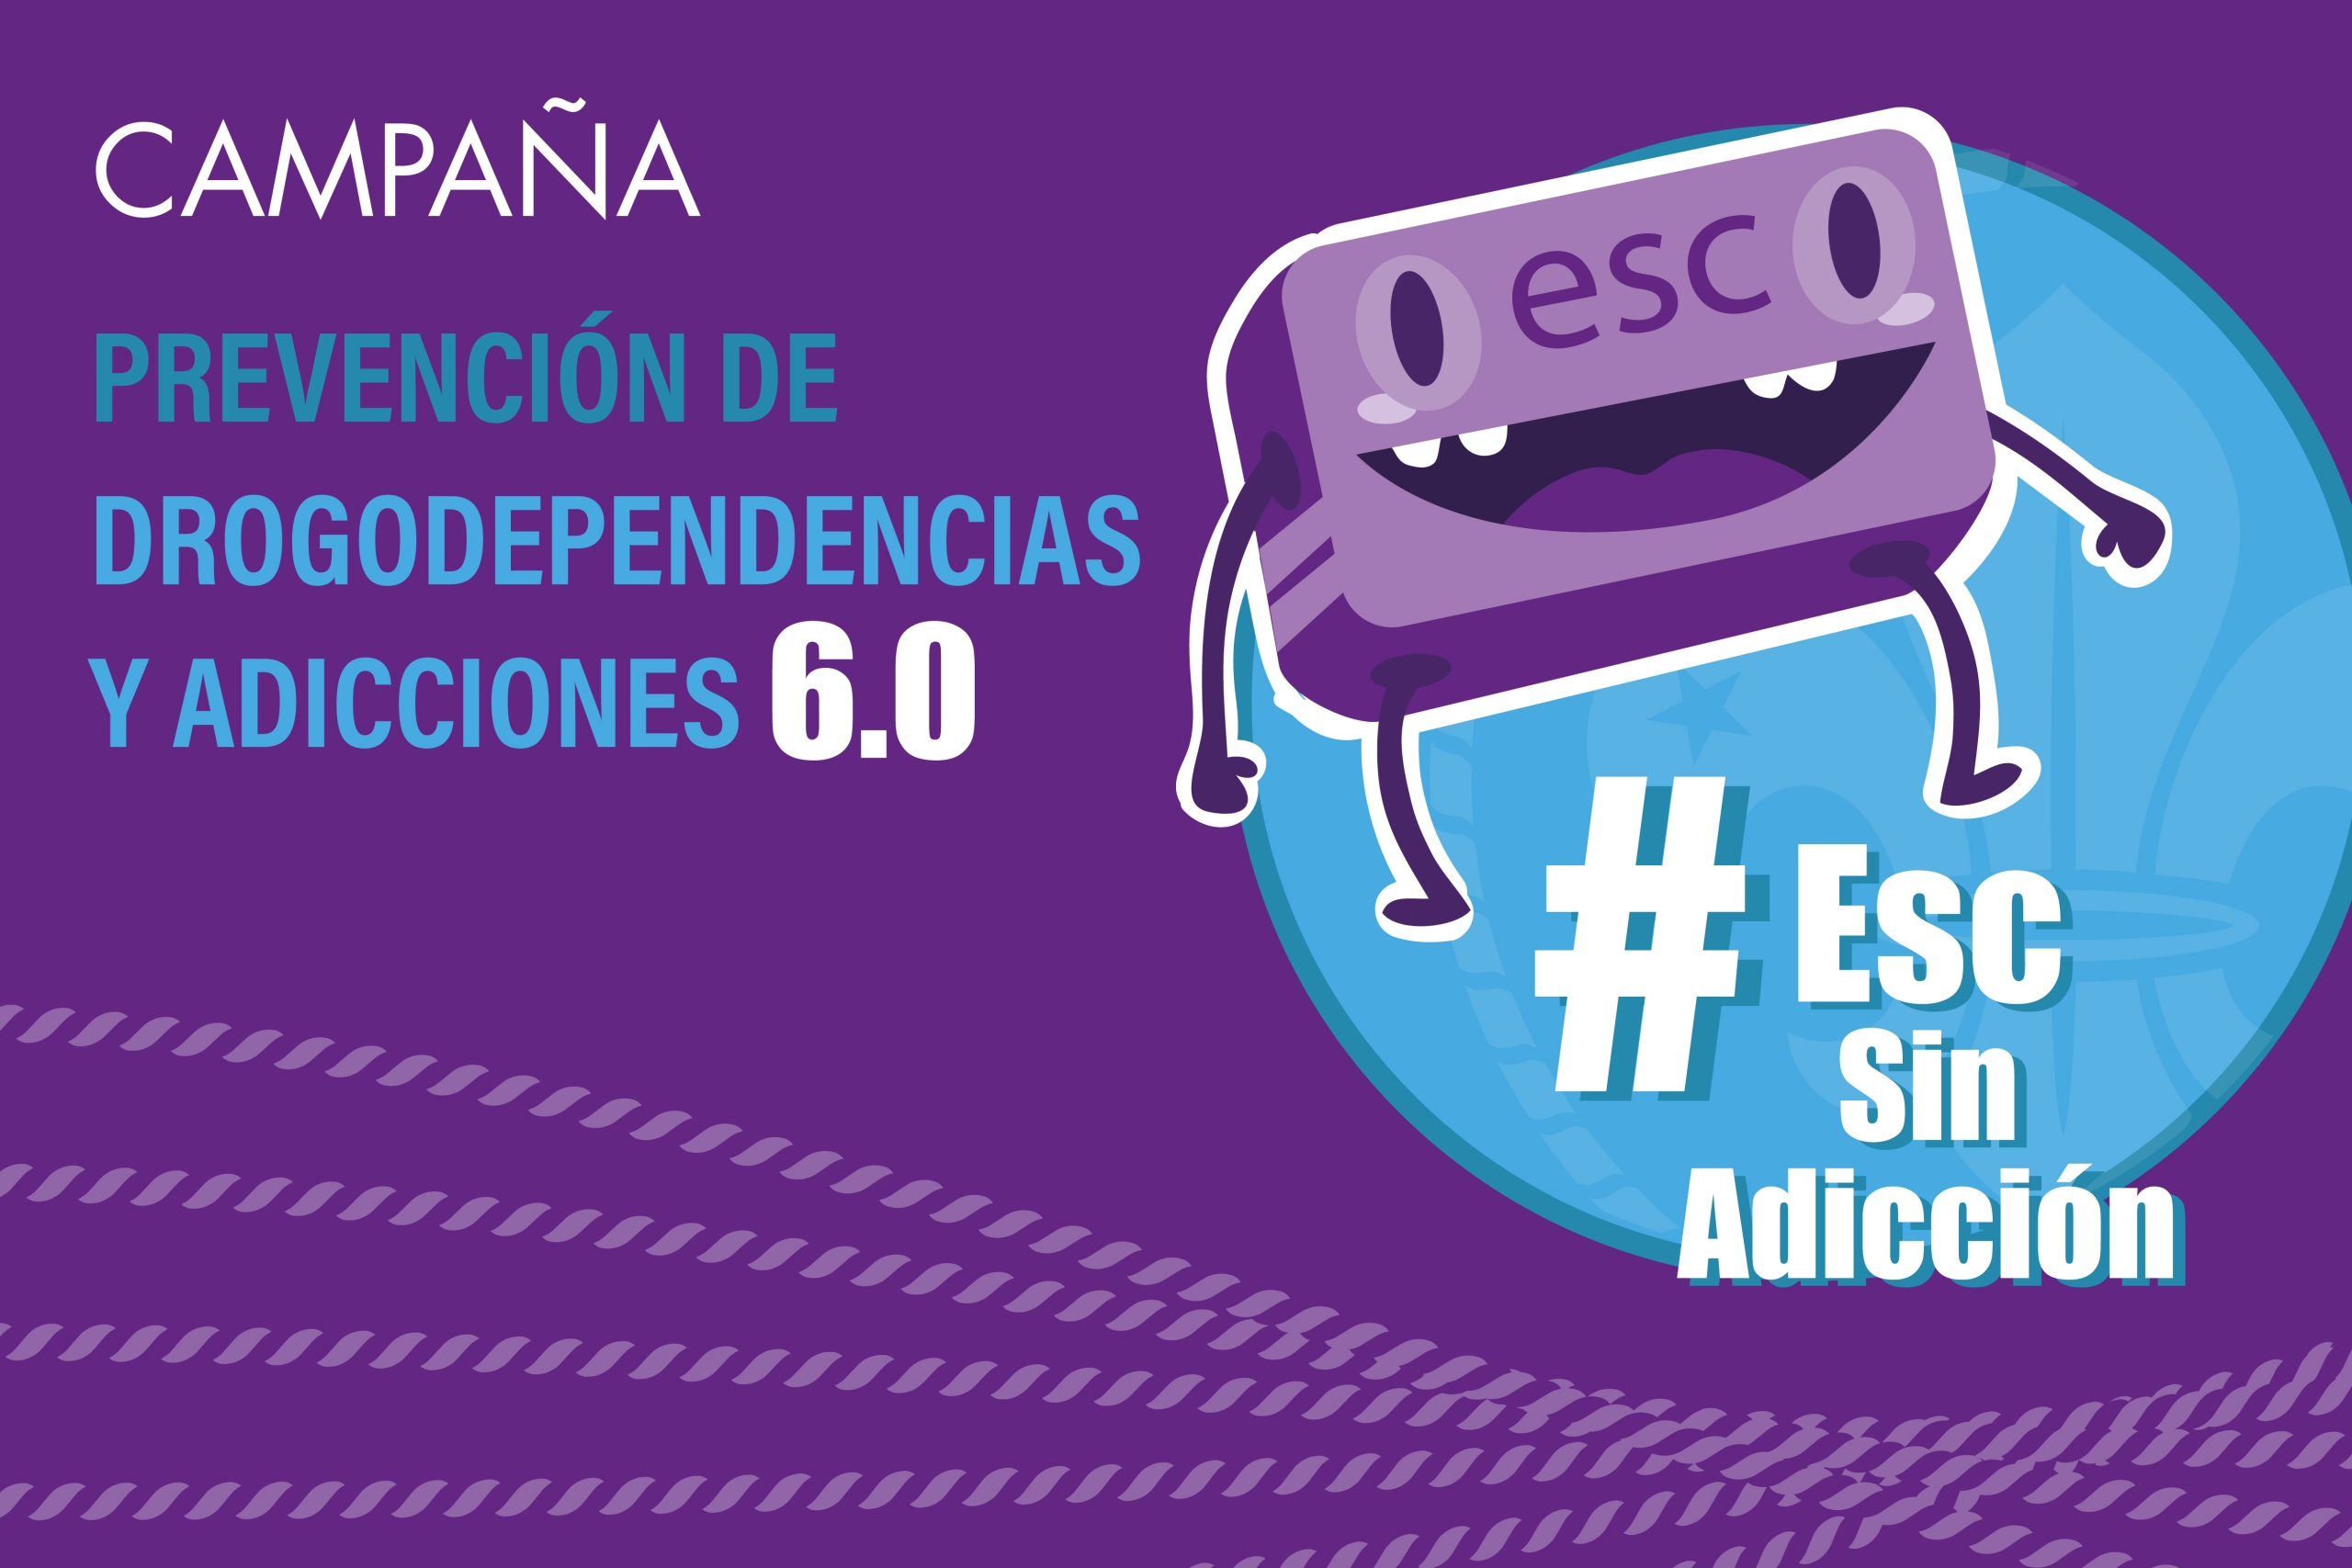 Campaña "#ESC sin adicción 6.0"